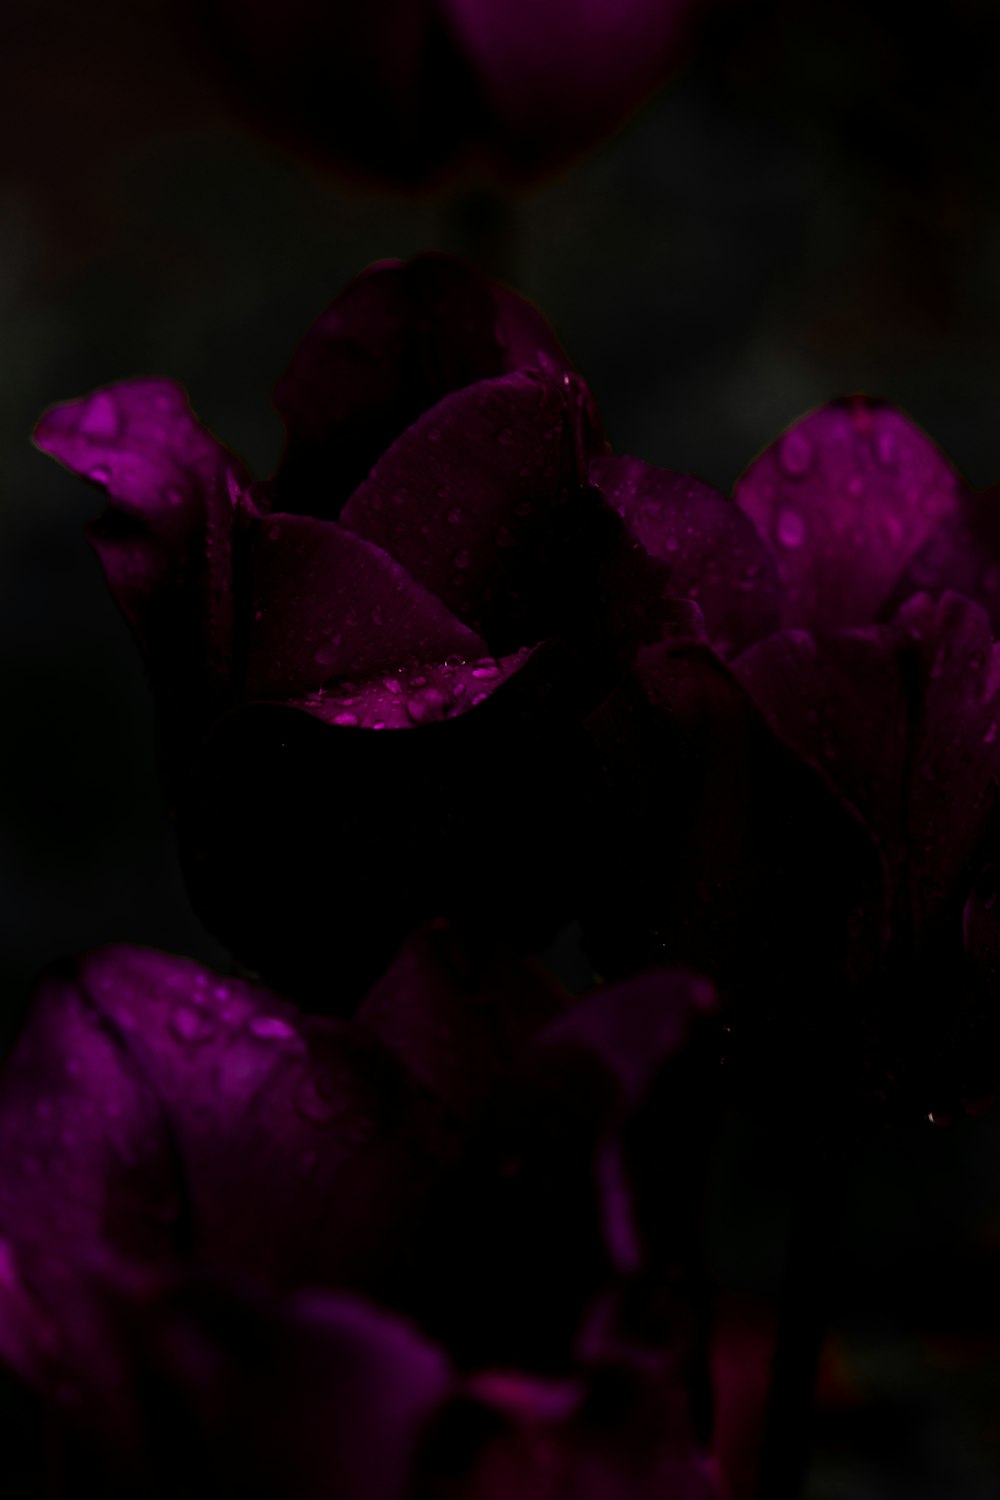 水滴がついた紫色の花